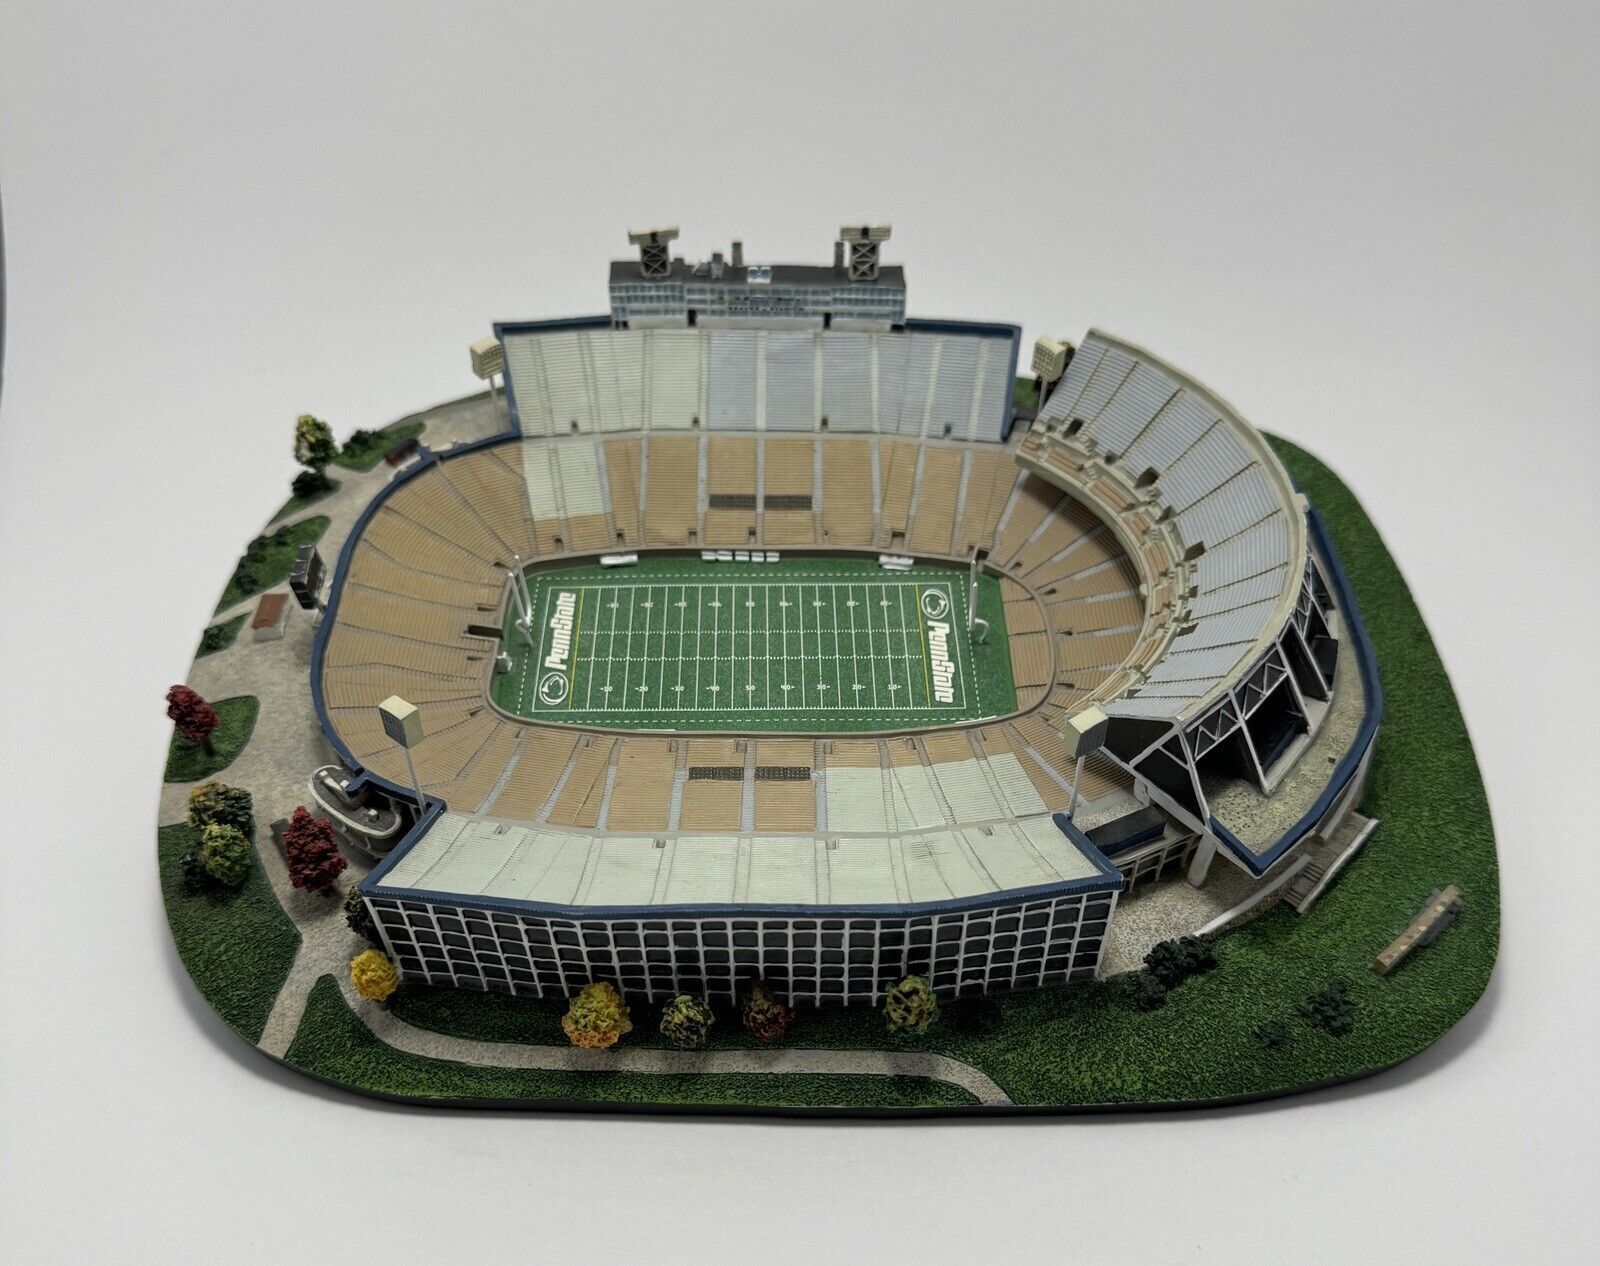 VTG 1990’s Danbury Mint Penn State Beaver Stadium Replica Nittany Lions Football